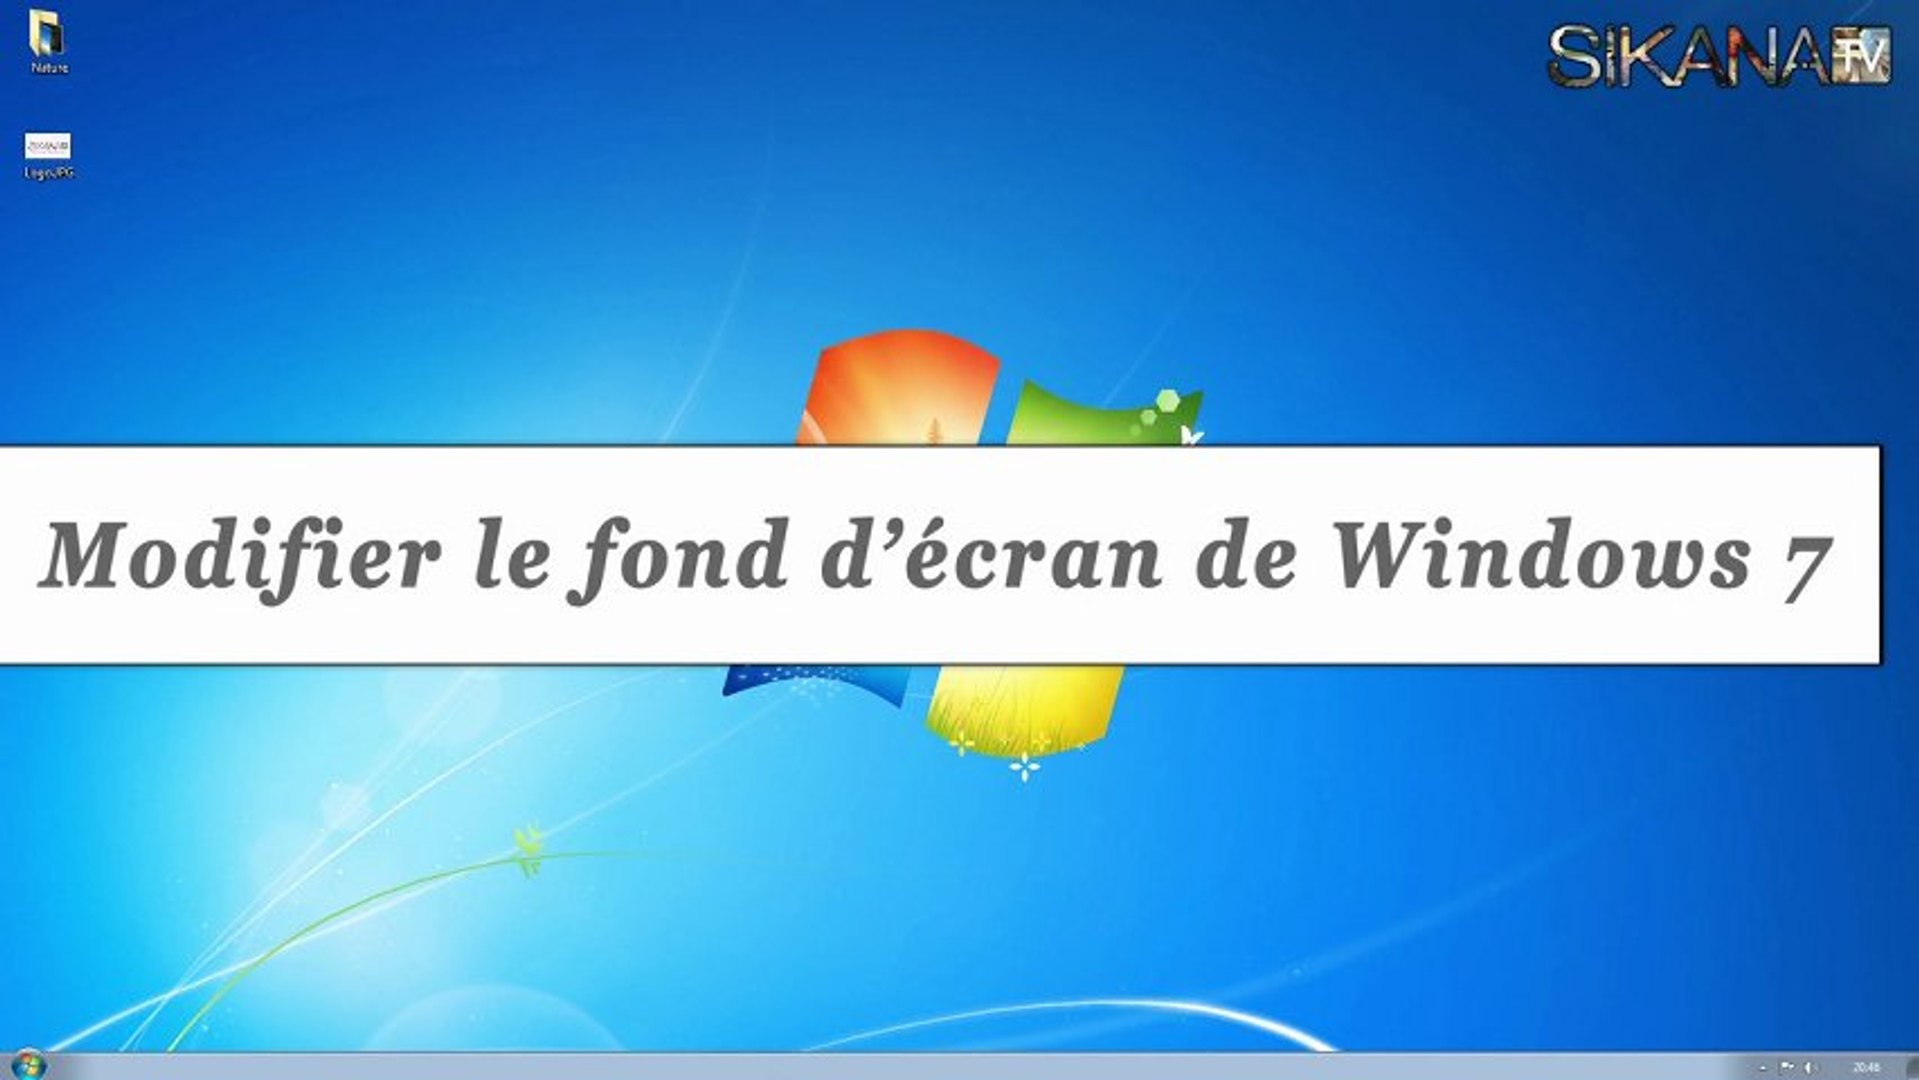 Windows 7 : Comment changer son fond d'écran ? - HD - Vidéo Dailymotion